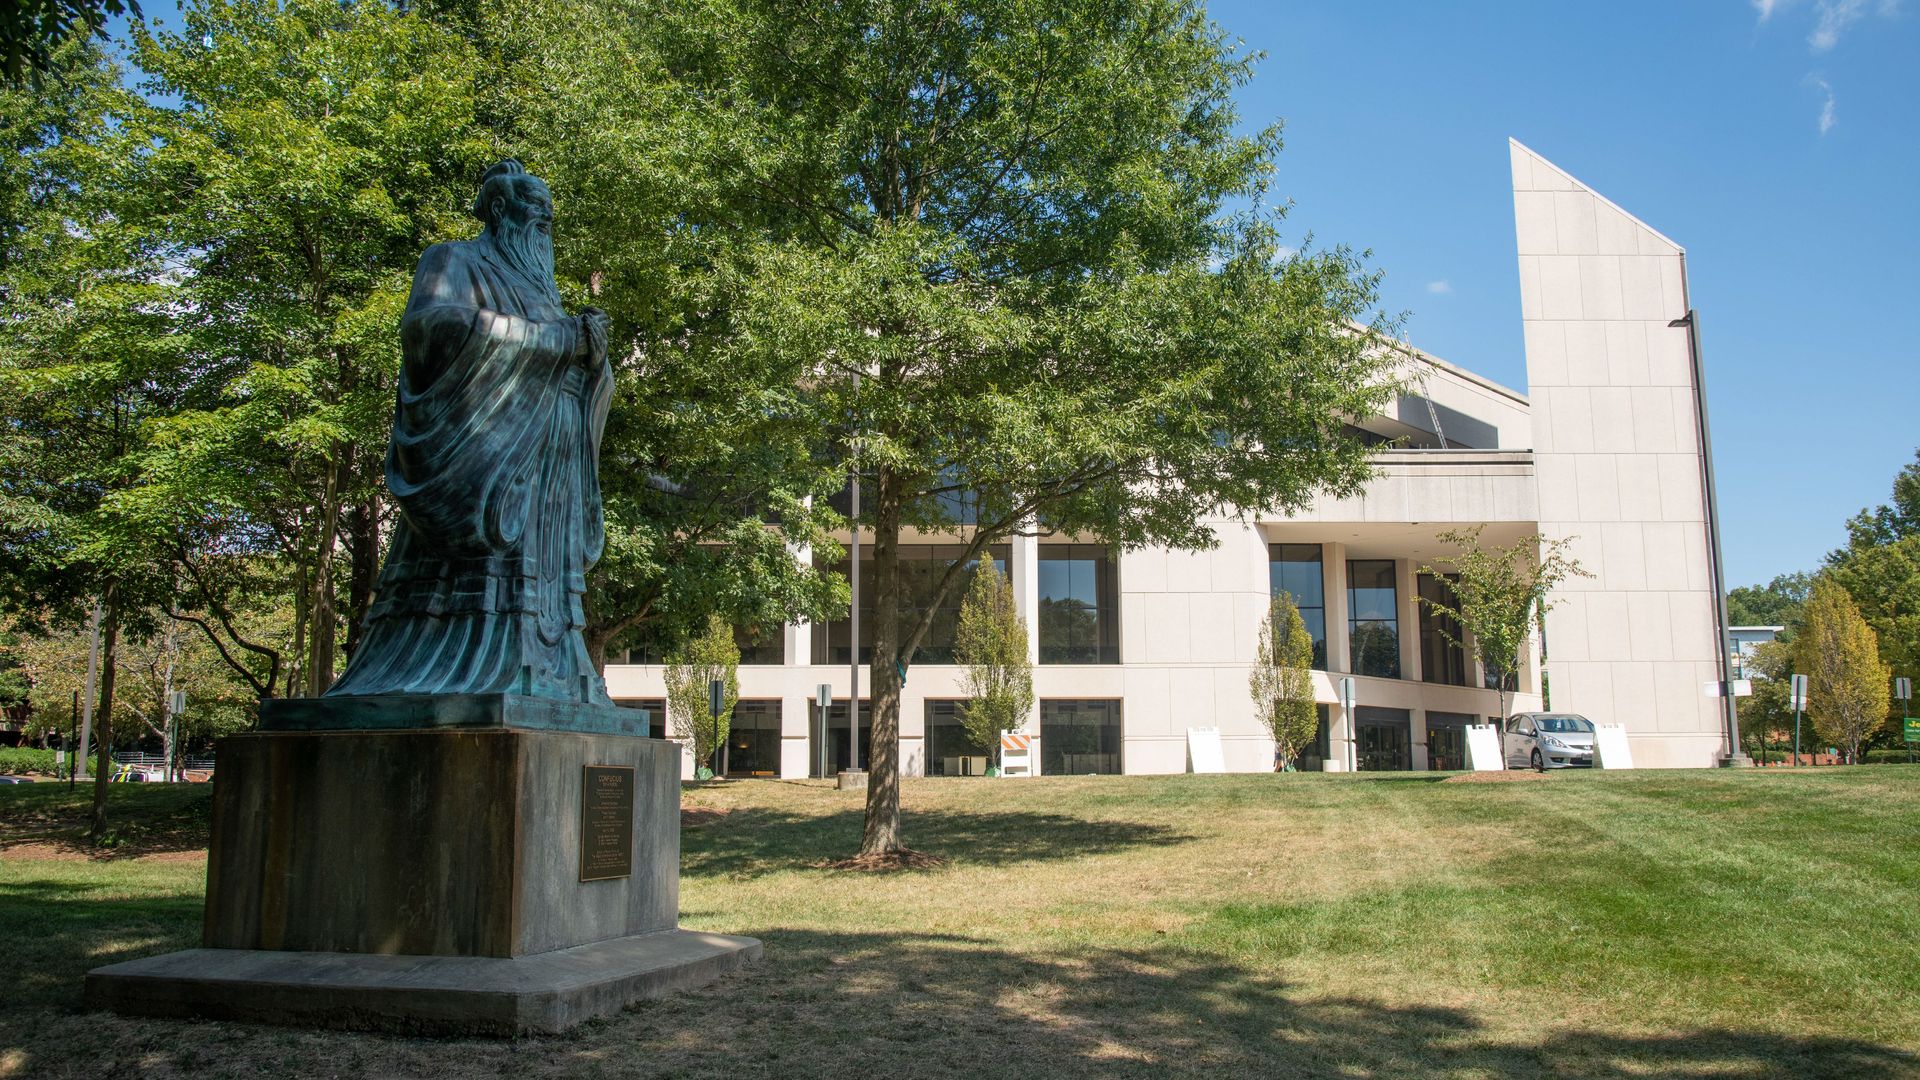 Statue of Confucius on the campus of George Mason University, Fairfax, Virginia. 